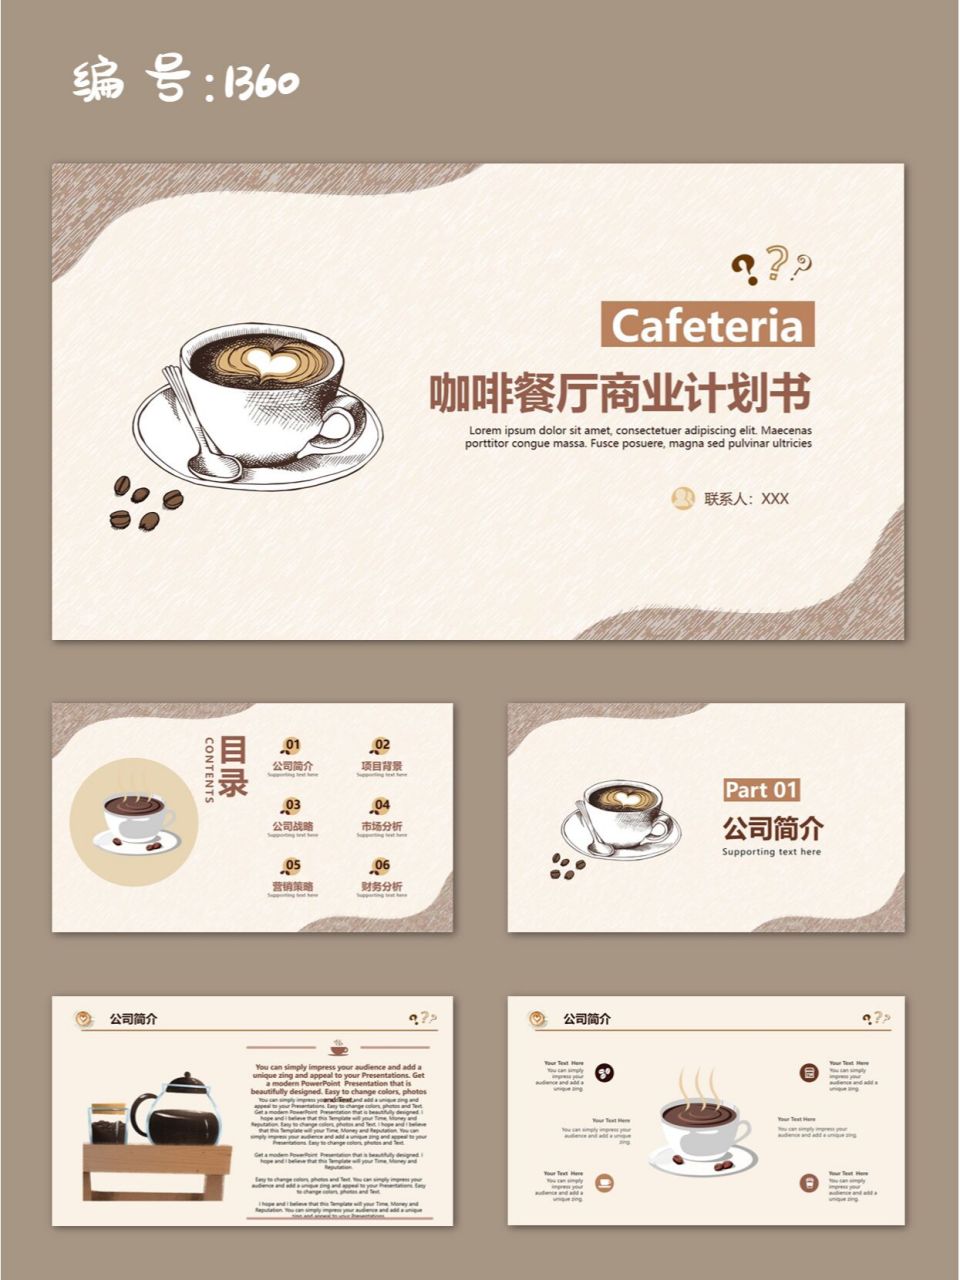 咖啡厅商业计划书大学生创业计划书ppt模板 98页数:25页(文字和图片